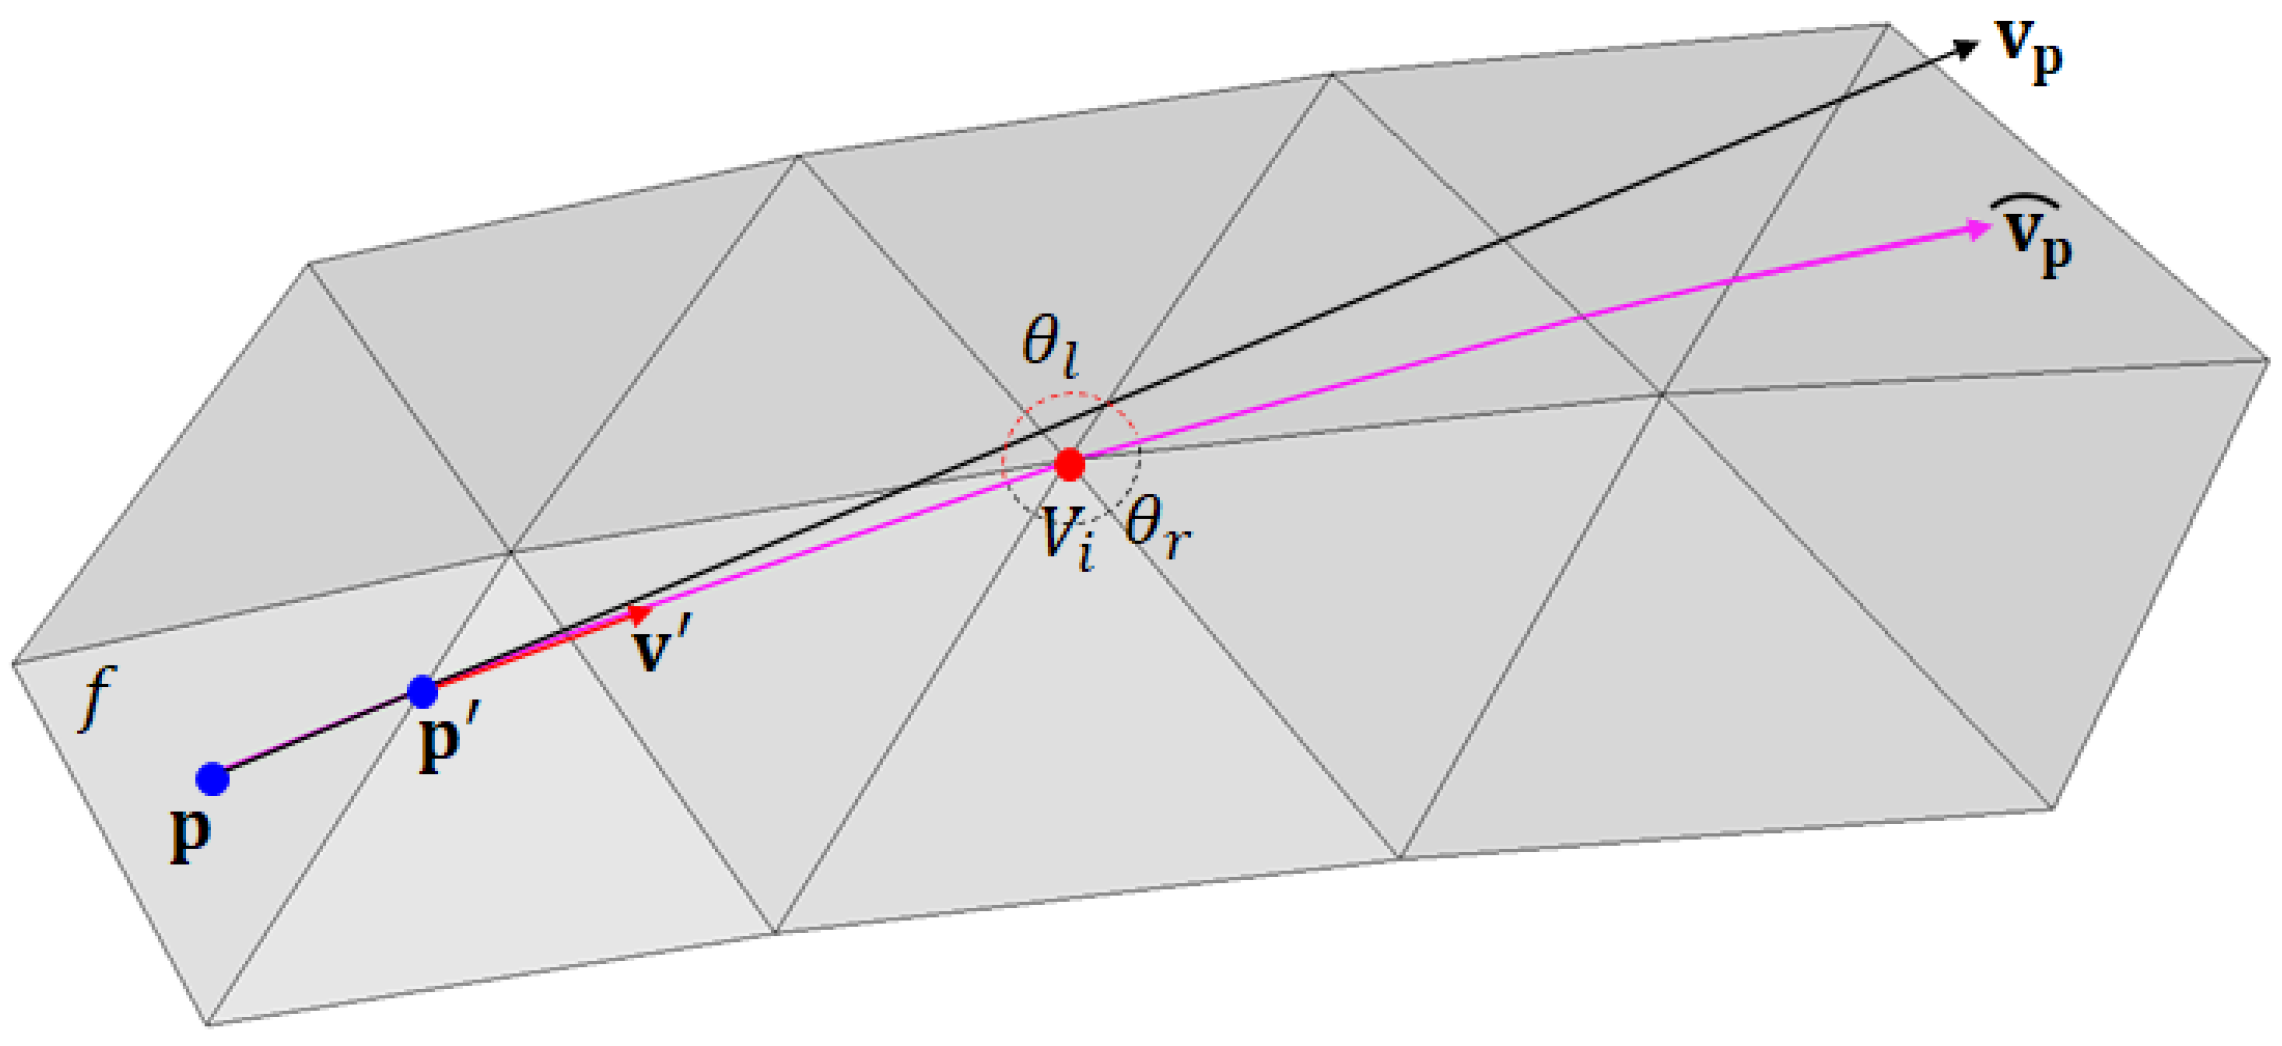 Đường cong Geodesic Hermite Spline là một trong những điều kỳ diệu nhất của toán học. Hãy ngắm nhìn hình ảnh liên quan đến đường cong này và khám phá thêm về nó!